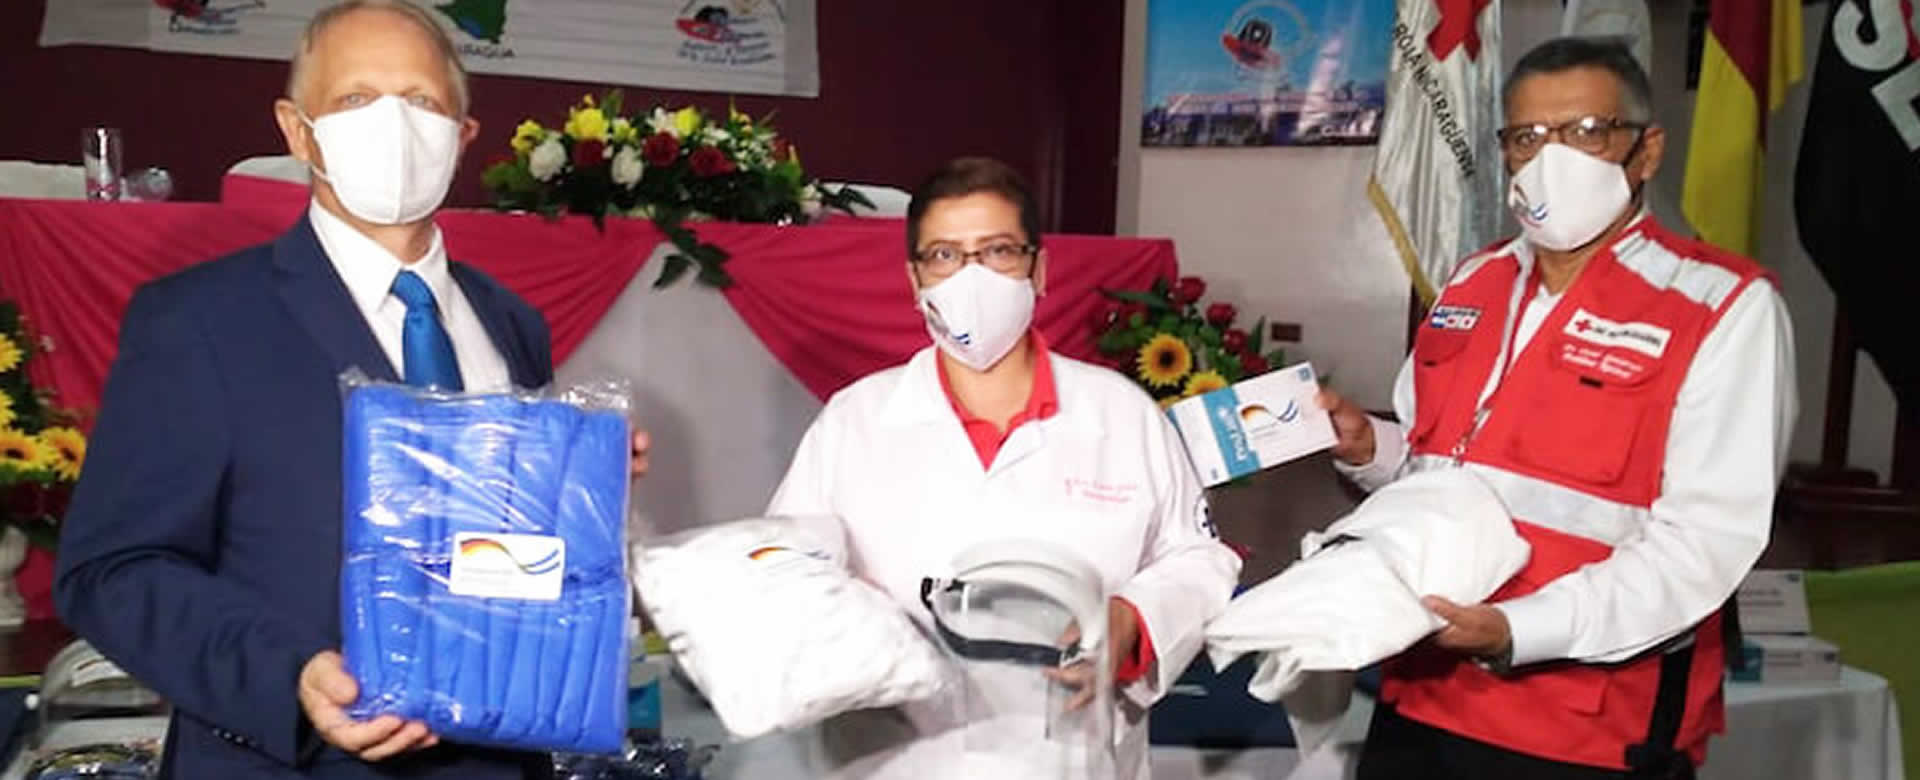 Alemania dona equipos médicos a Nicaragua para combatir la COVID-19